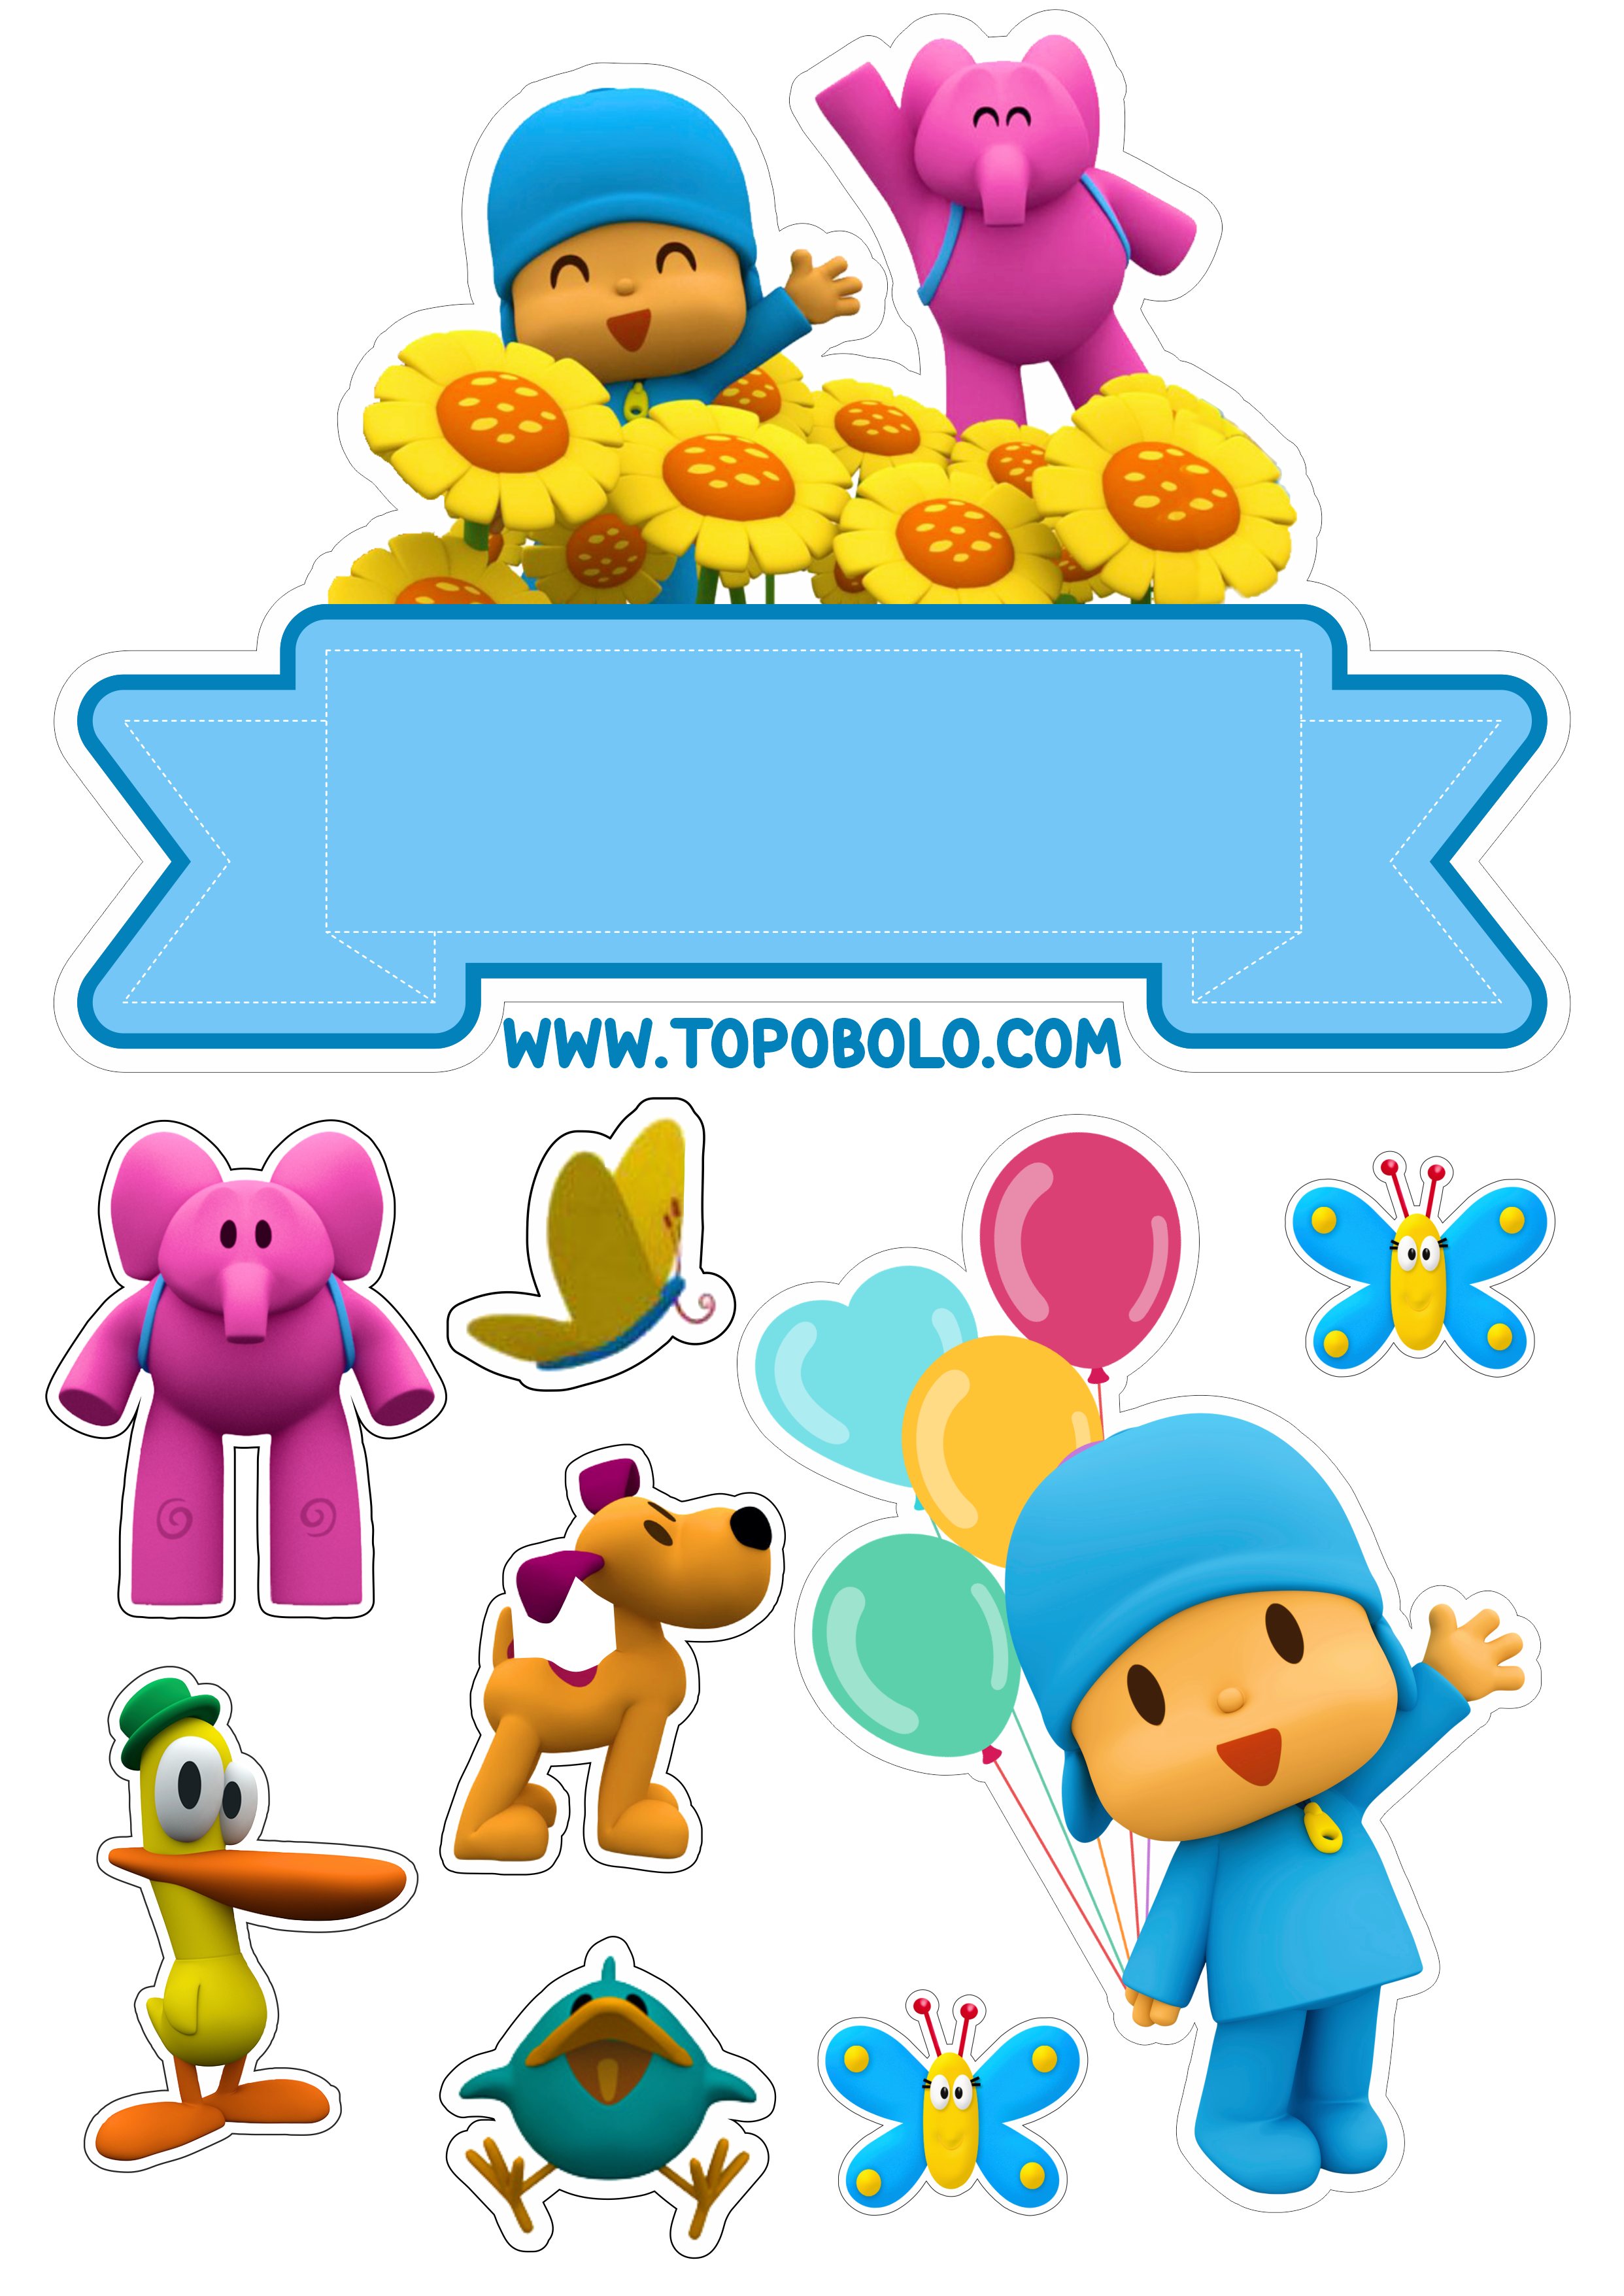 Topo de bolo Pocoyo festa de aniversário infantil decoração png